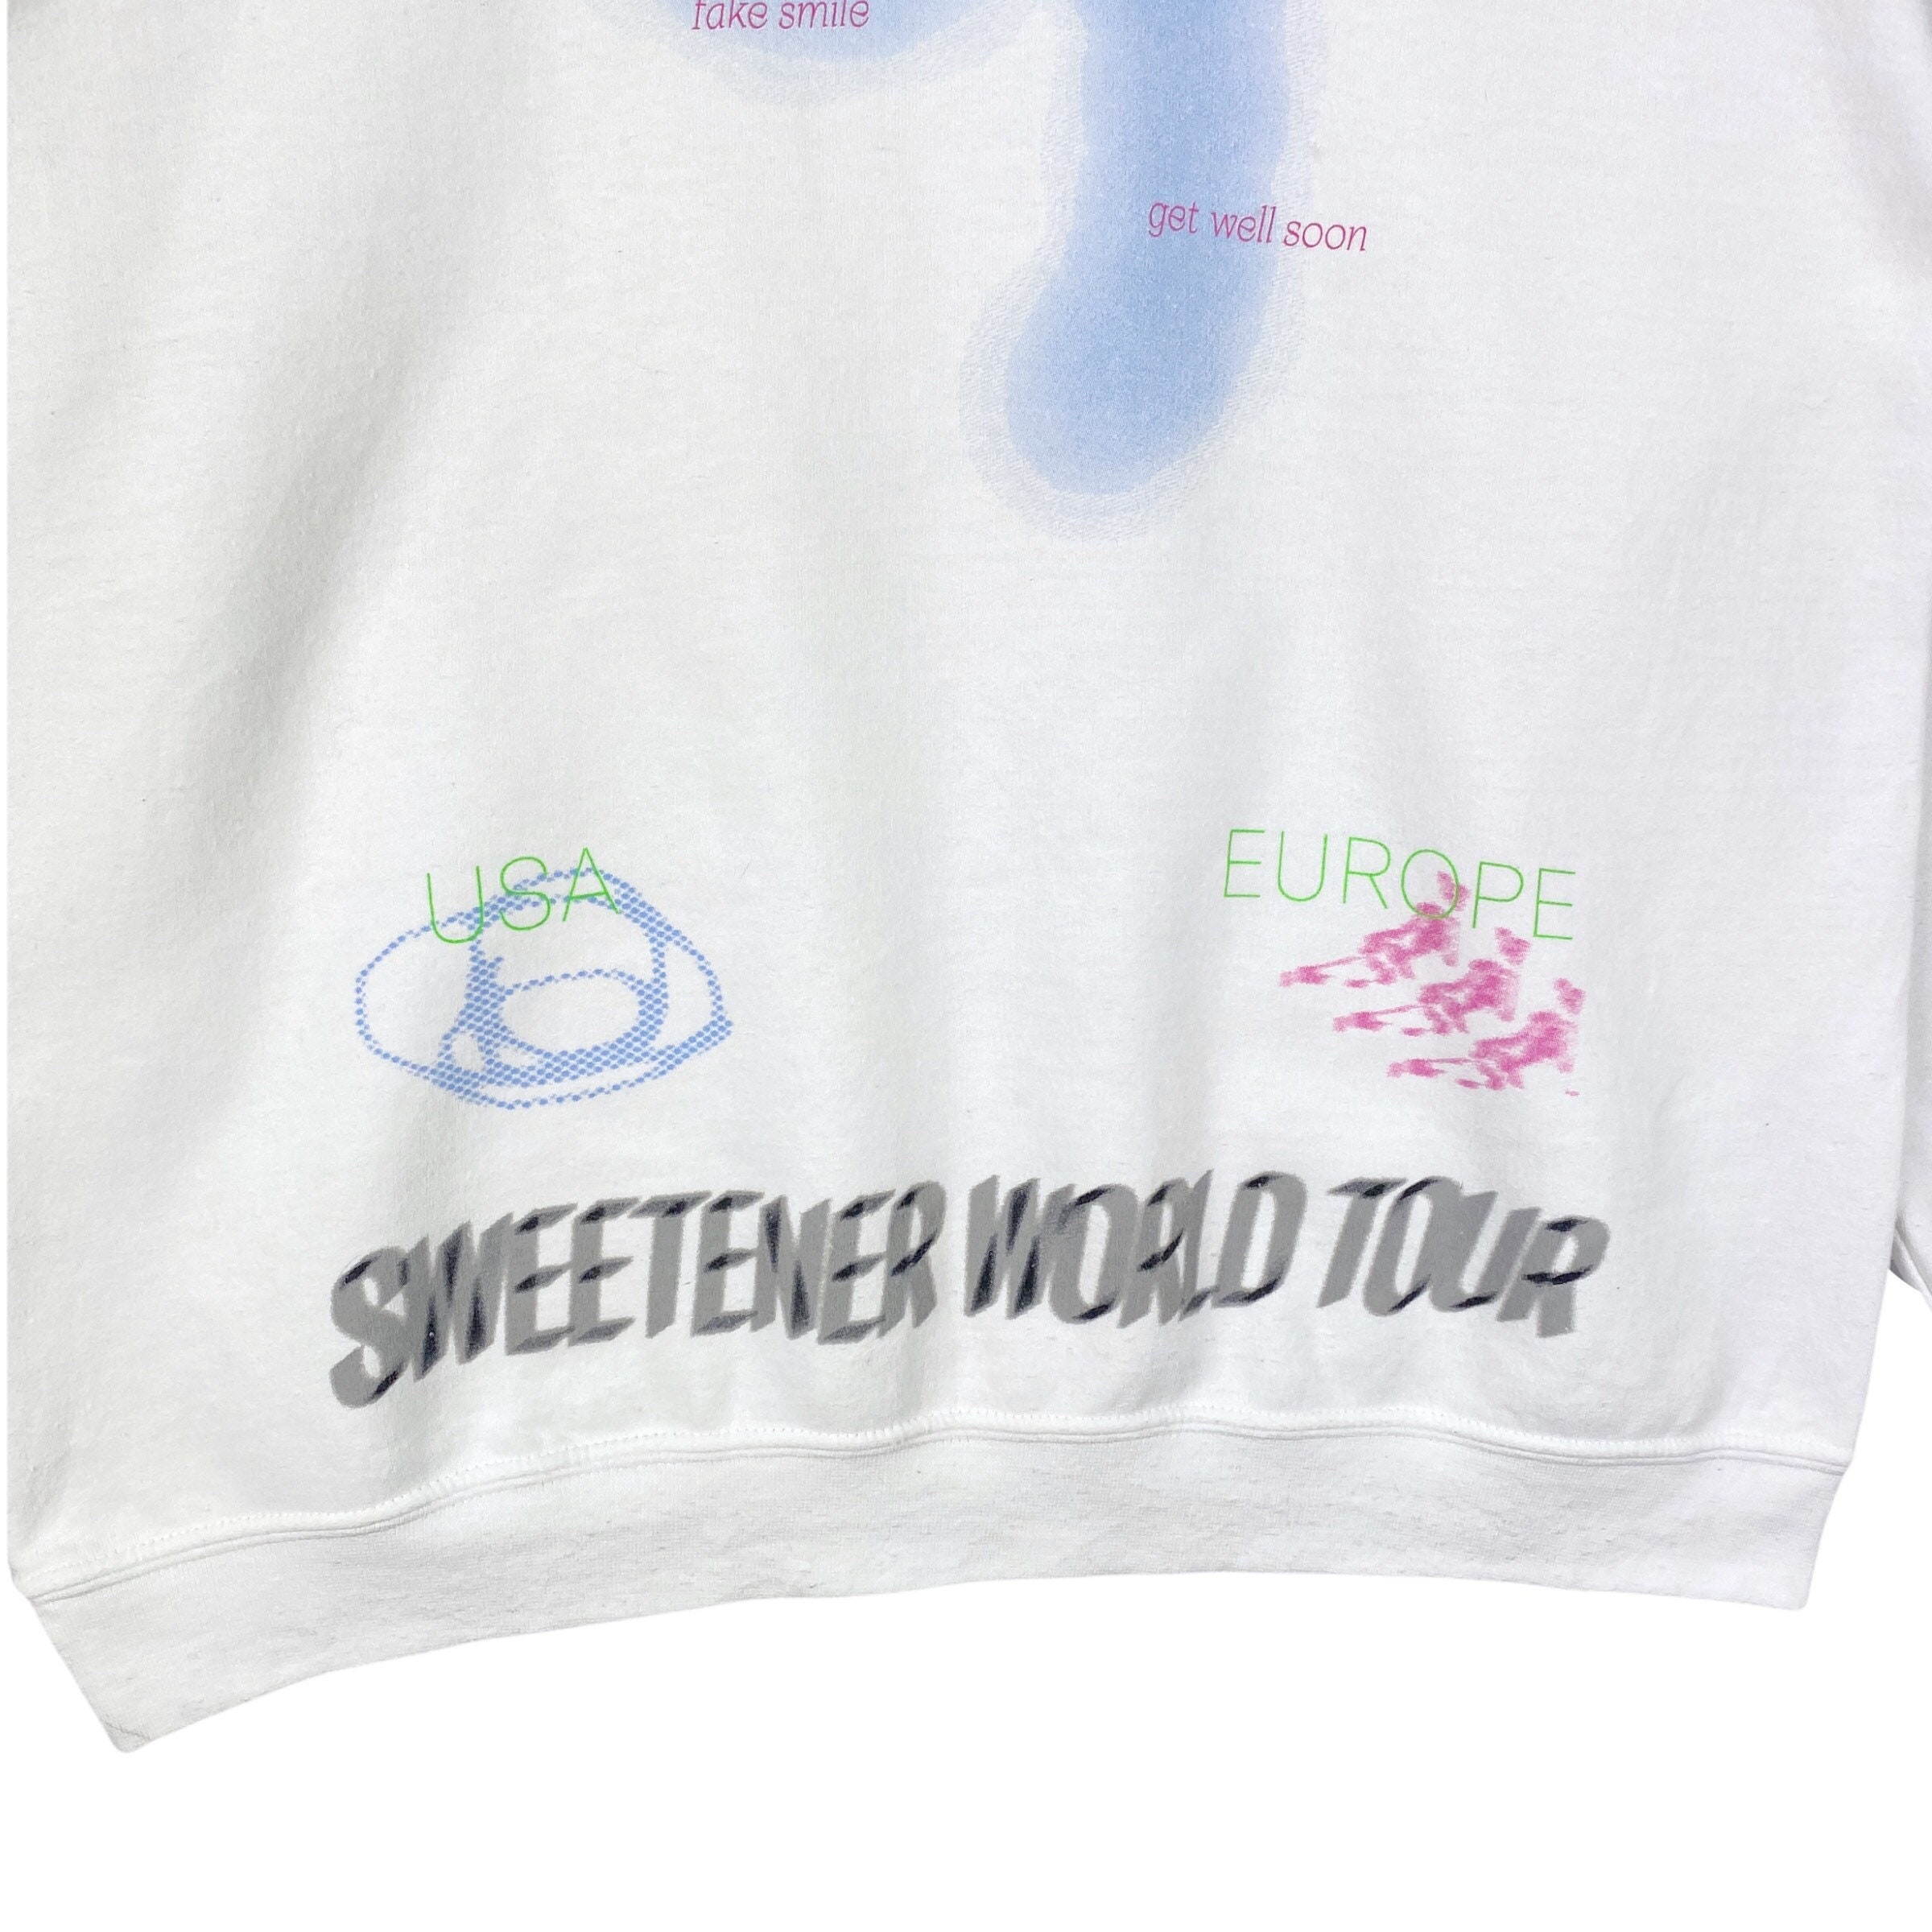 Ariana Grande Sweetener Merchandise